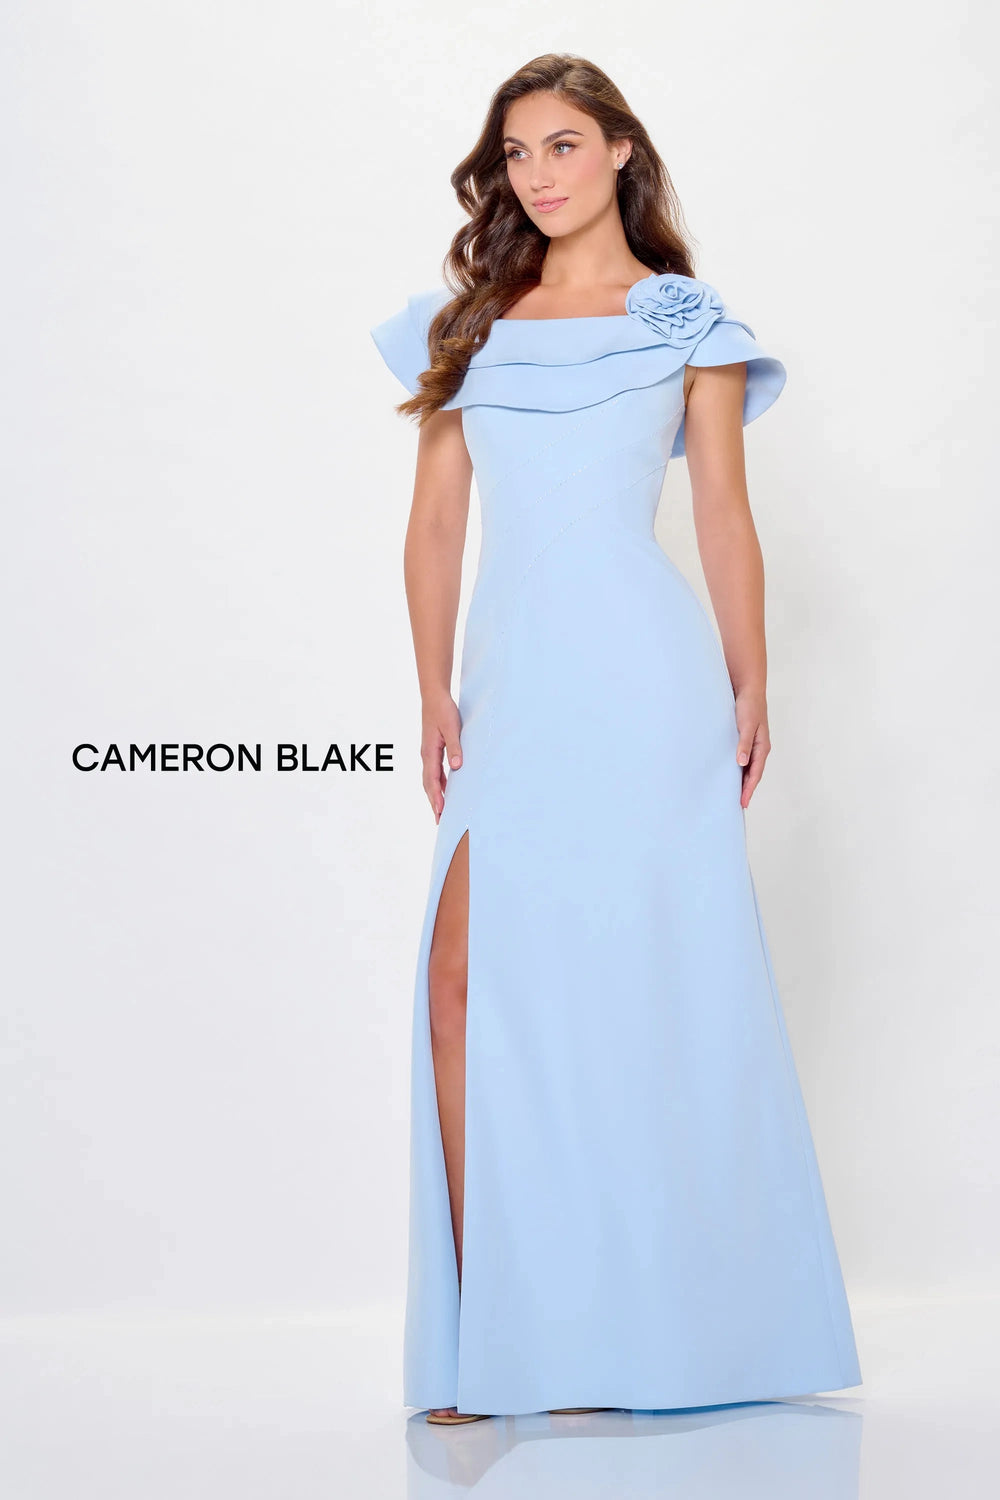 Mon Cheri Cameron Blake Dress Mon Cheri Cameron Blake CB3231 Dress